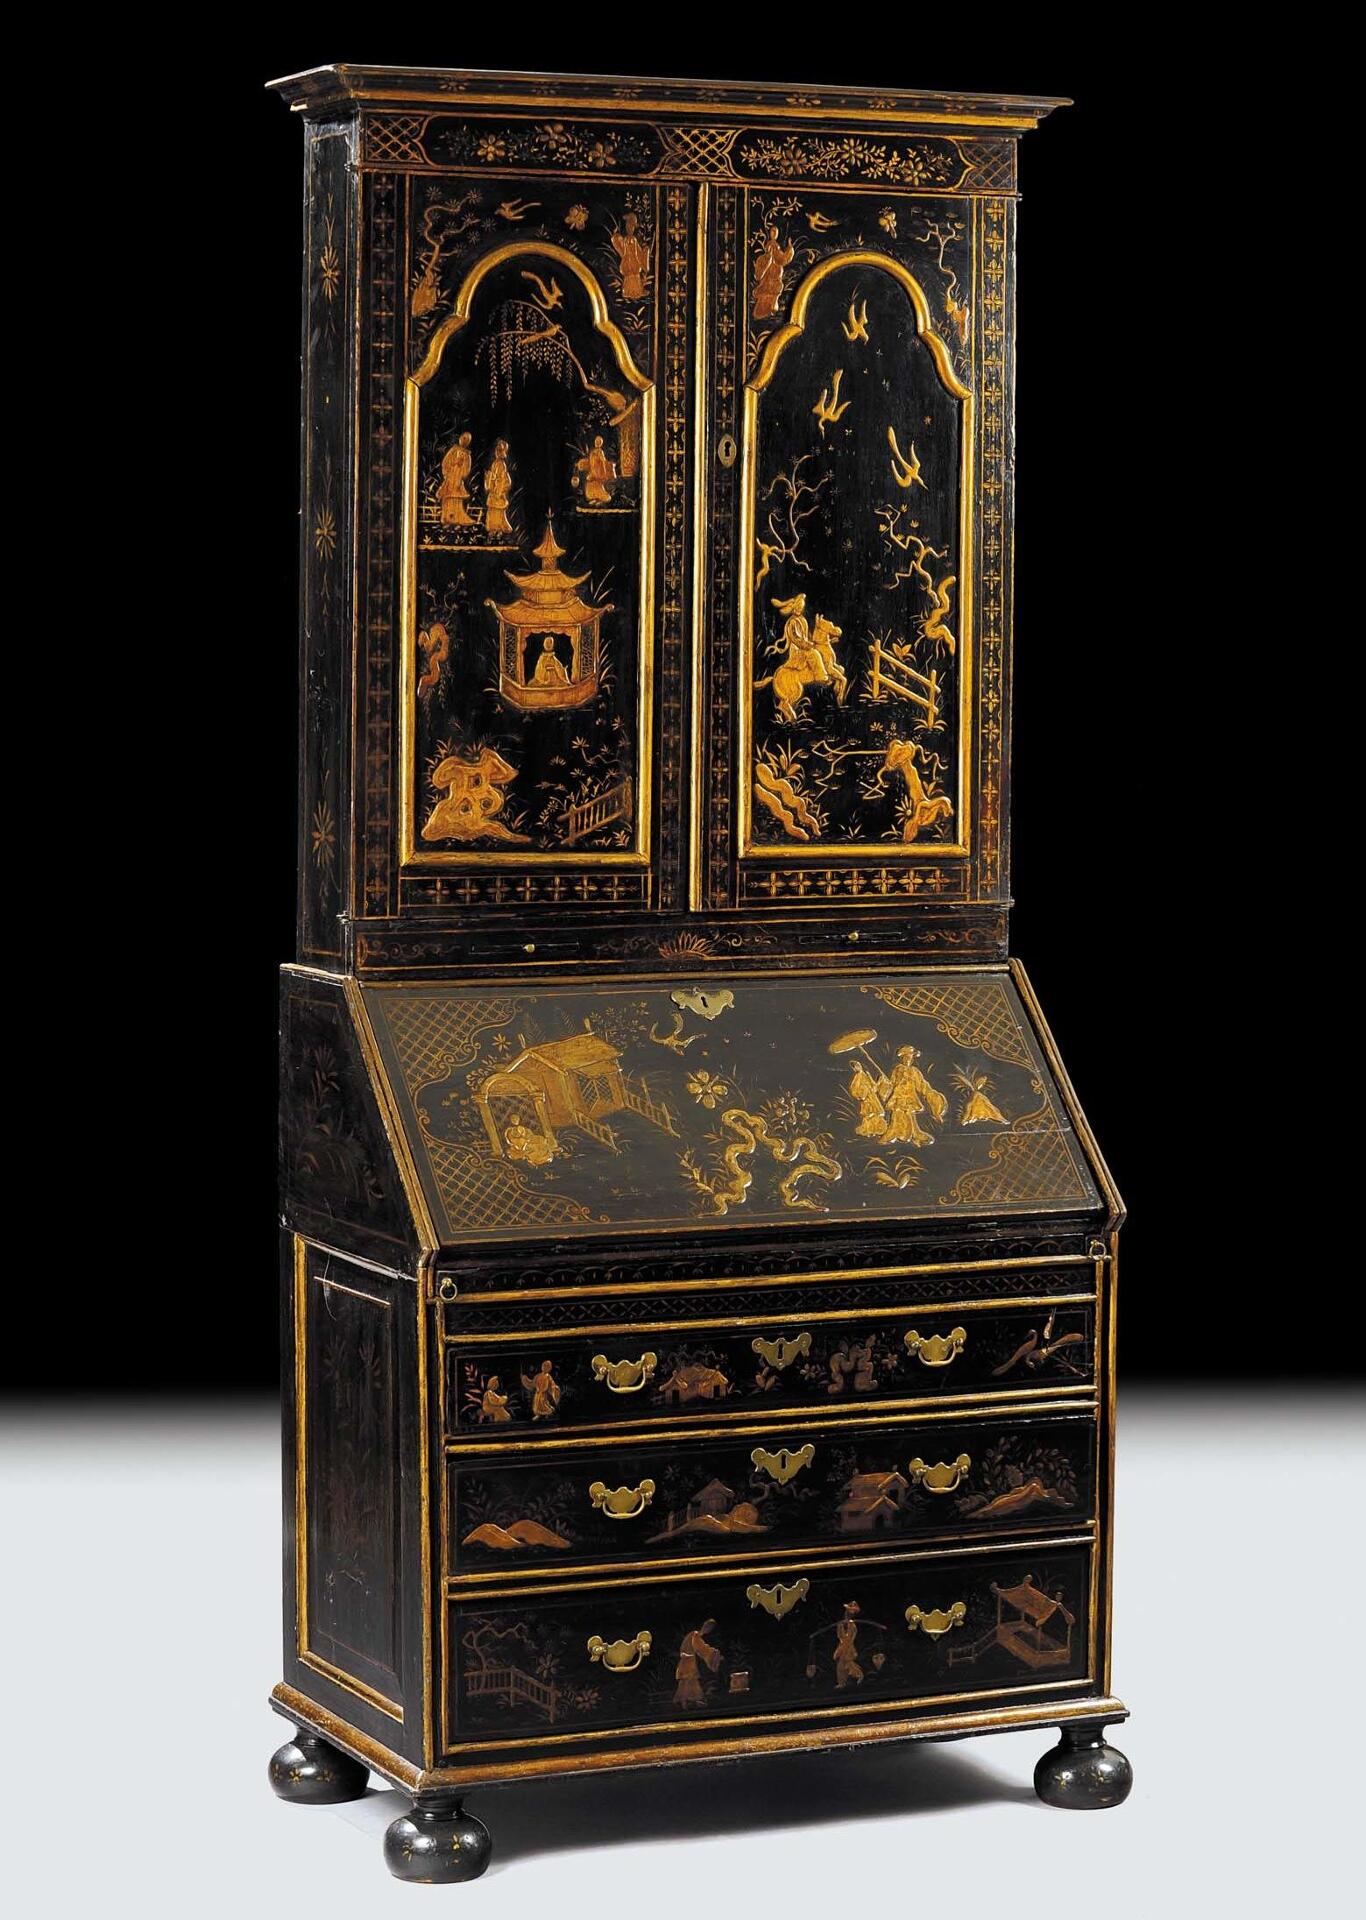 trumeau secretaire costruito in stile classico 600 veneziano a cineserie decorazaione di lusso made in italy riproducibile su misura